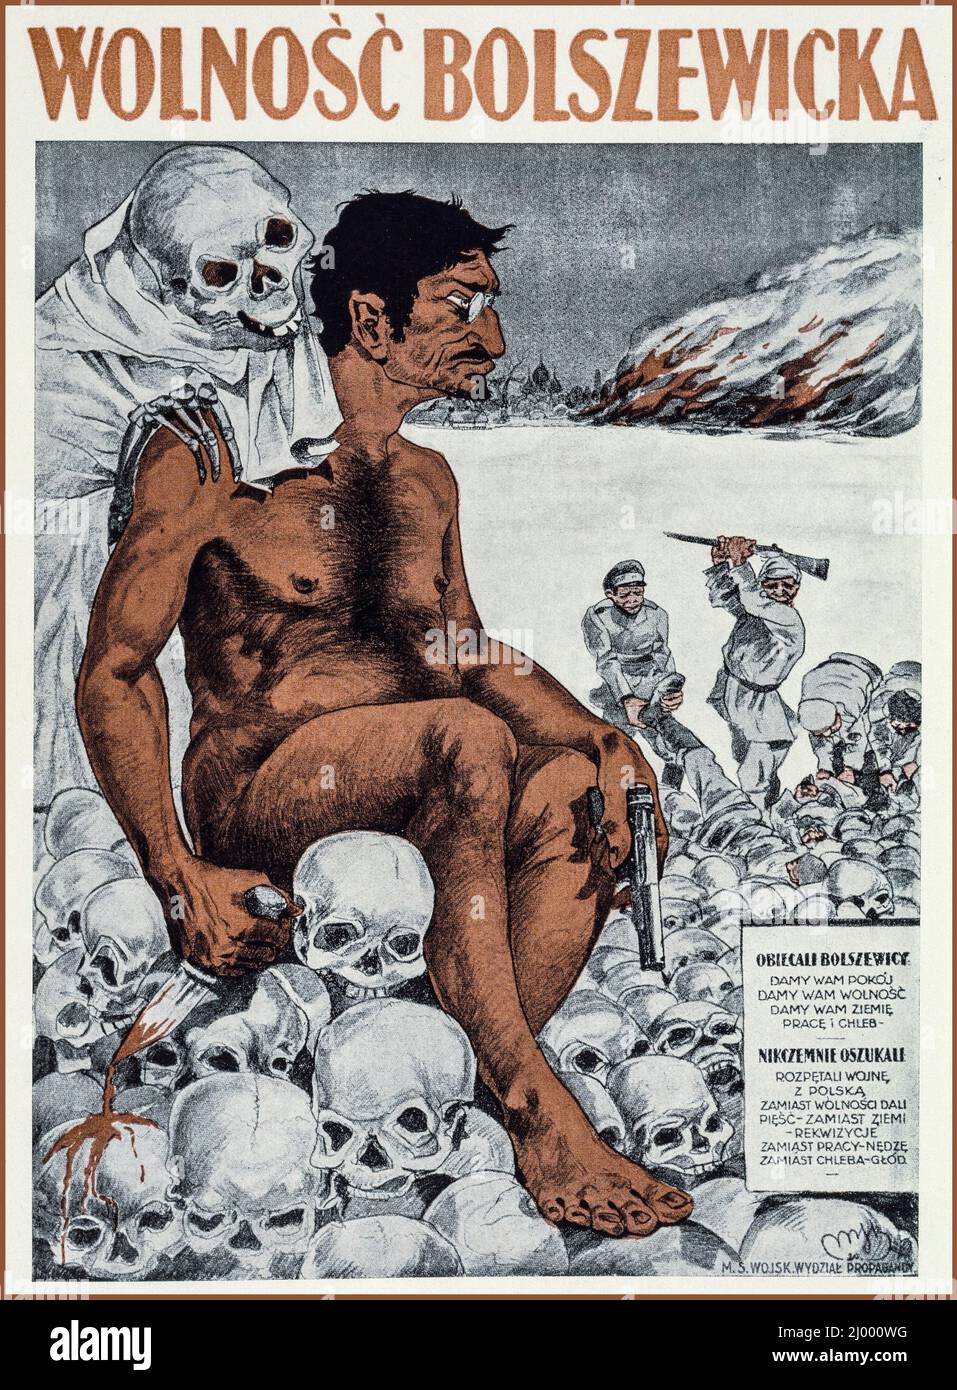 Poster Vintage Propaganda 1920 Trotsky raffigurato dalla propaganda polacca (1920) come bolscevico imbevuto di sangue durante la guerra polacco-russa del 1920. Manifesto anti-comunista del governo polacco per contrastare la propaganda bolscevica dalla Russia durante la guerra polacco-russa del 1920 Foto Stock